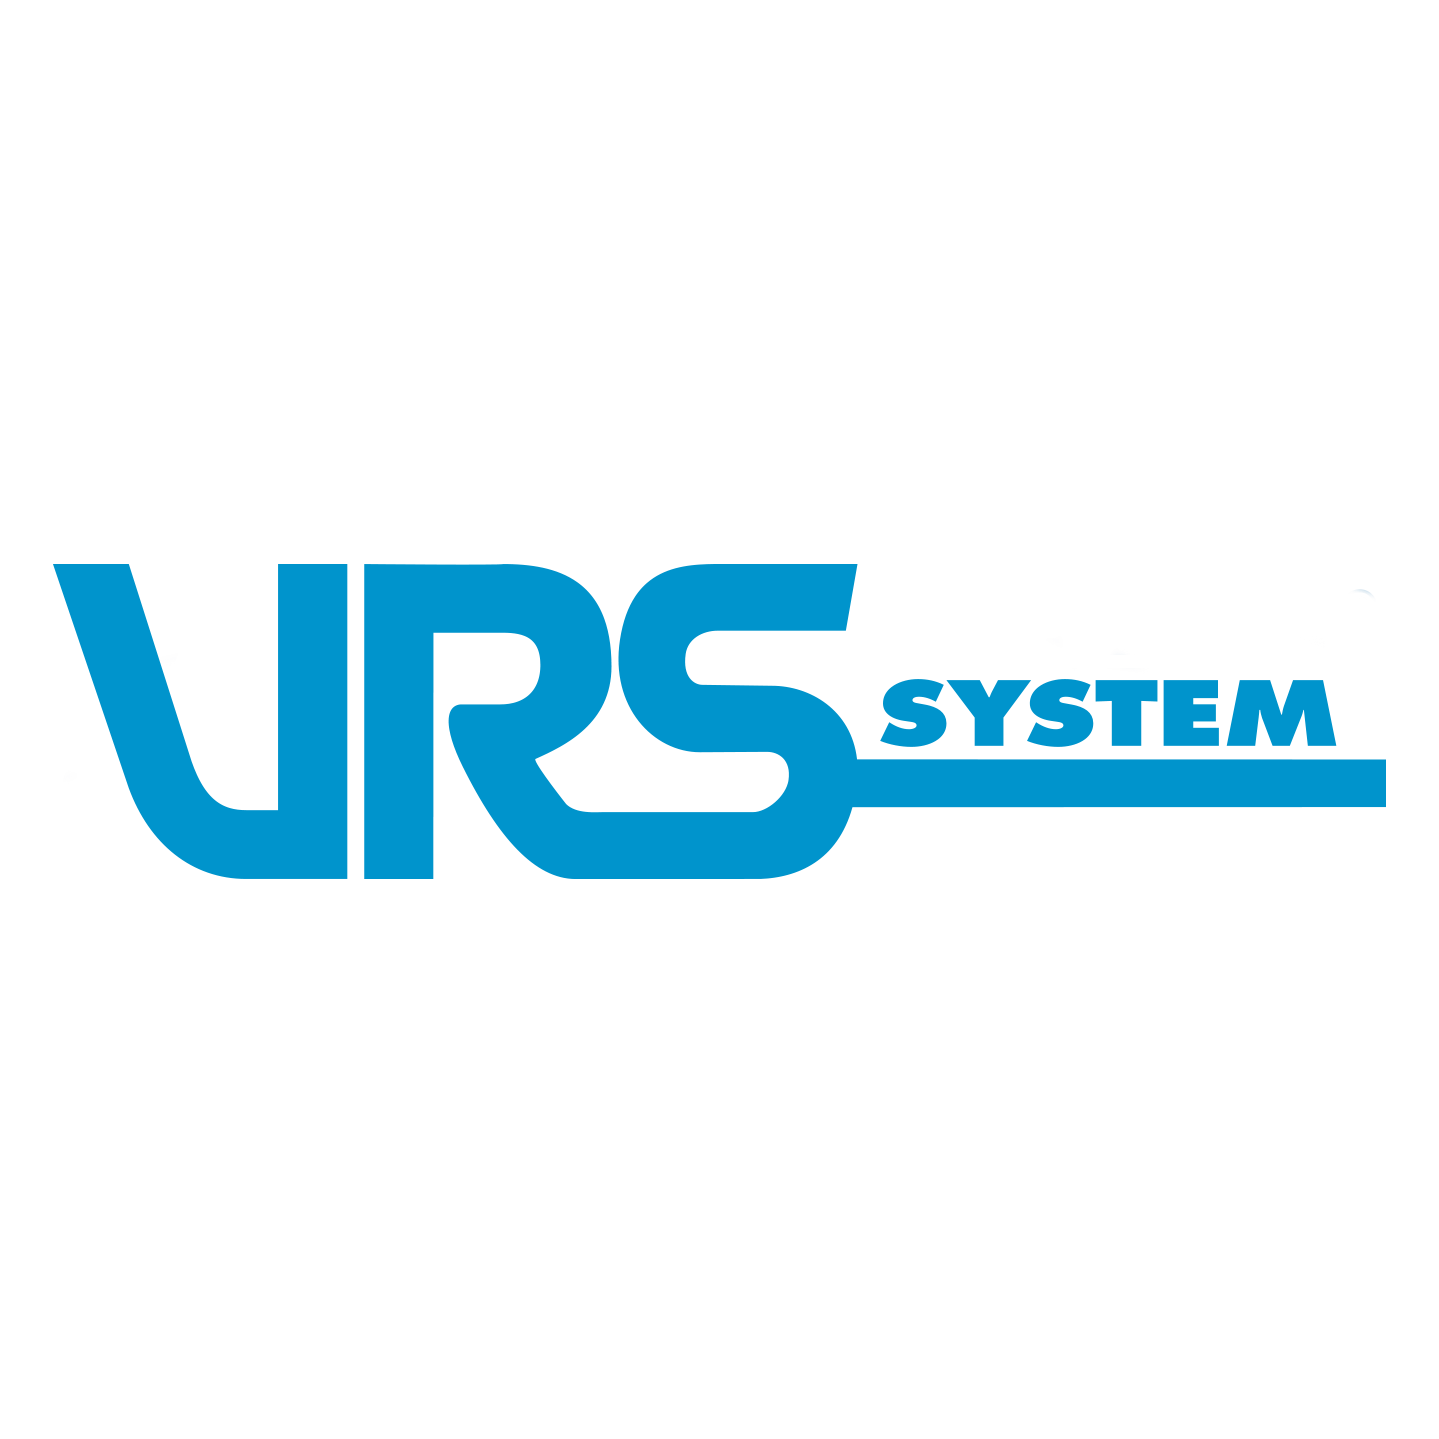 VRS-SYSTEM | Transporterar ditt vatten säkert